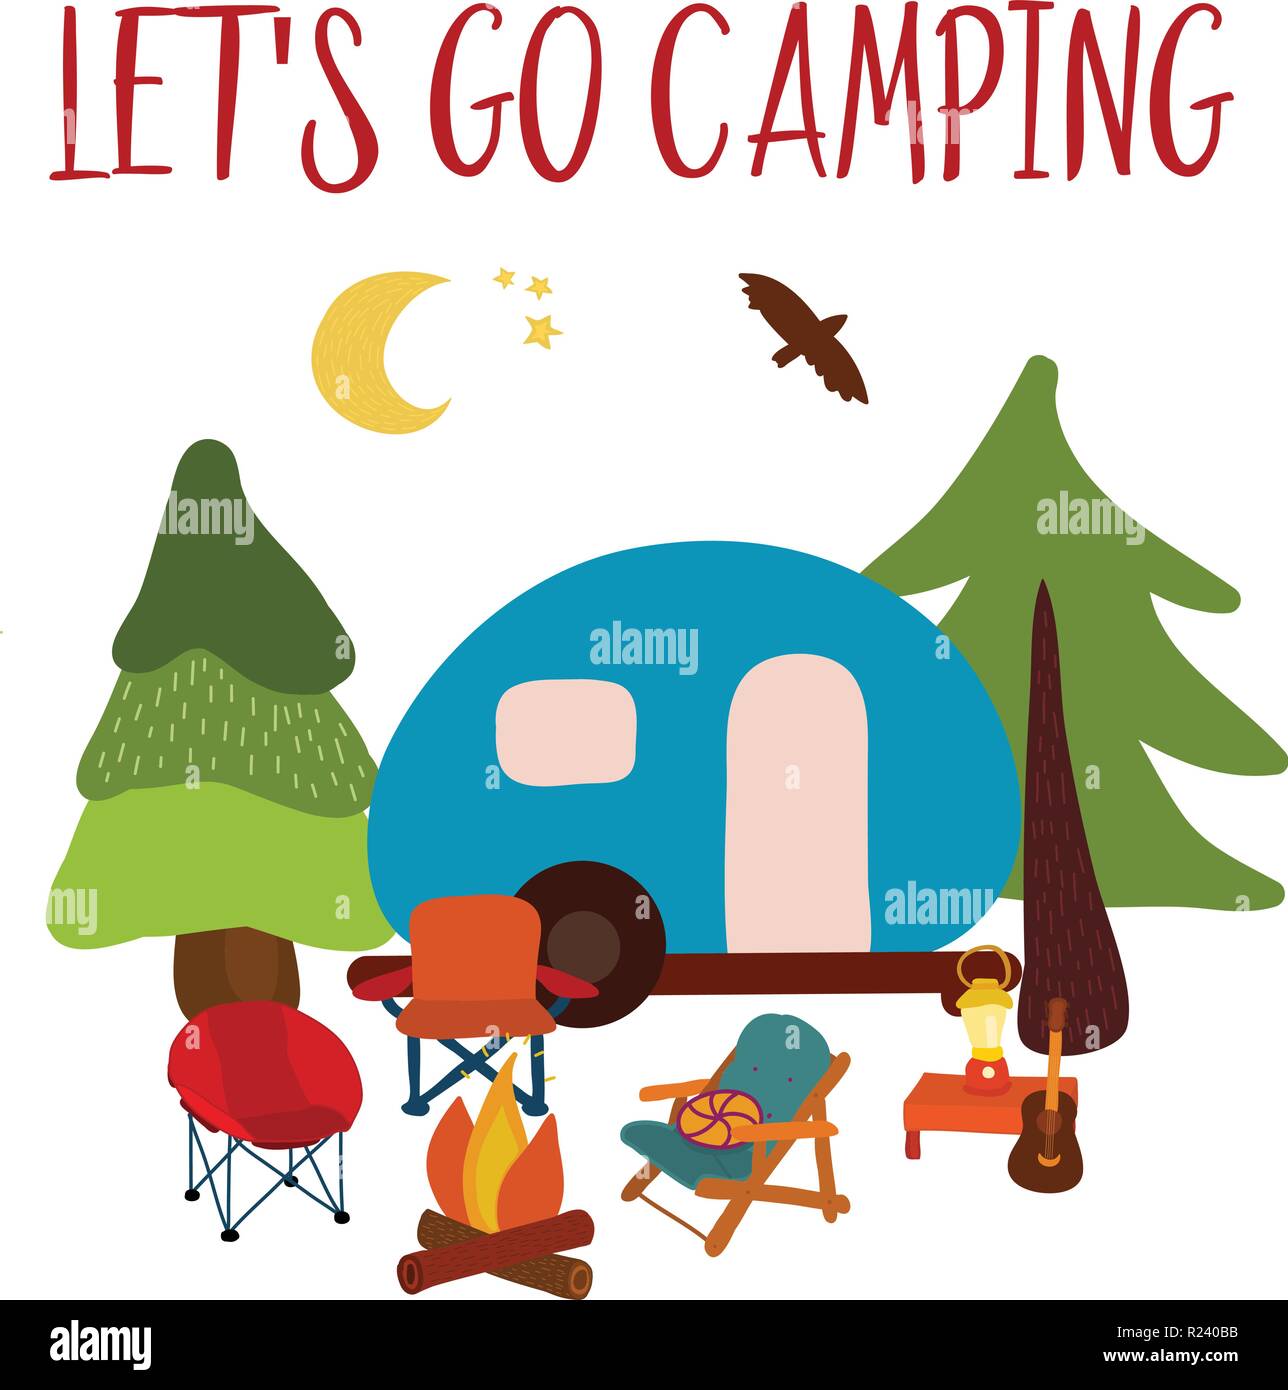 Let's go voyage camping - camping de l'été illustration vectorielle. Camping Blue van avec feu de camp, des chaises et de la guitare. Aventure en forêt. Scène de nuit de camp. Pour les cartes, affiche, publicité, décoration. Illustration de Vecteur